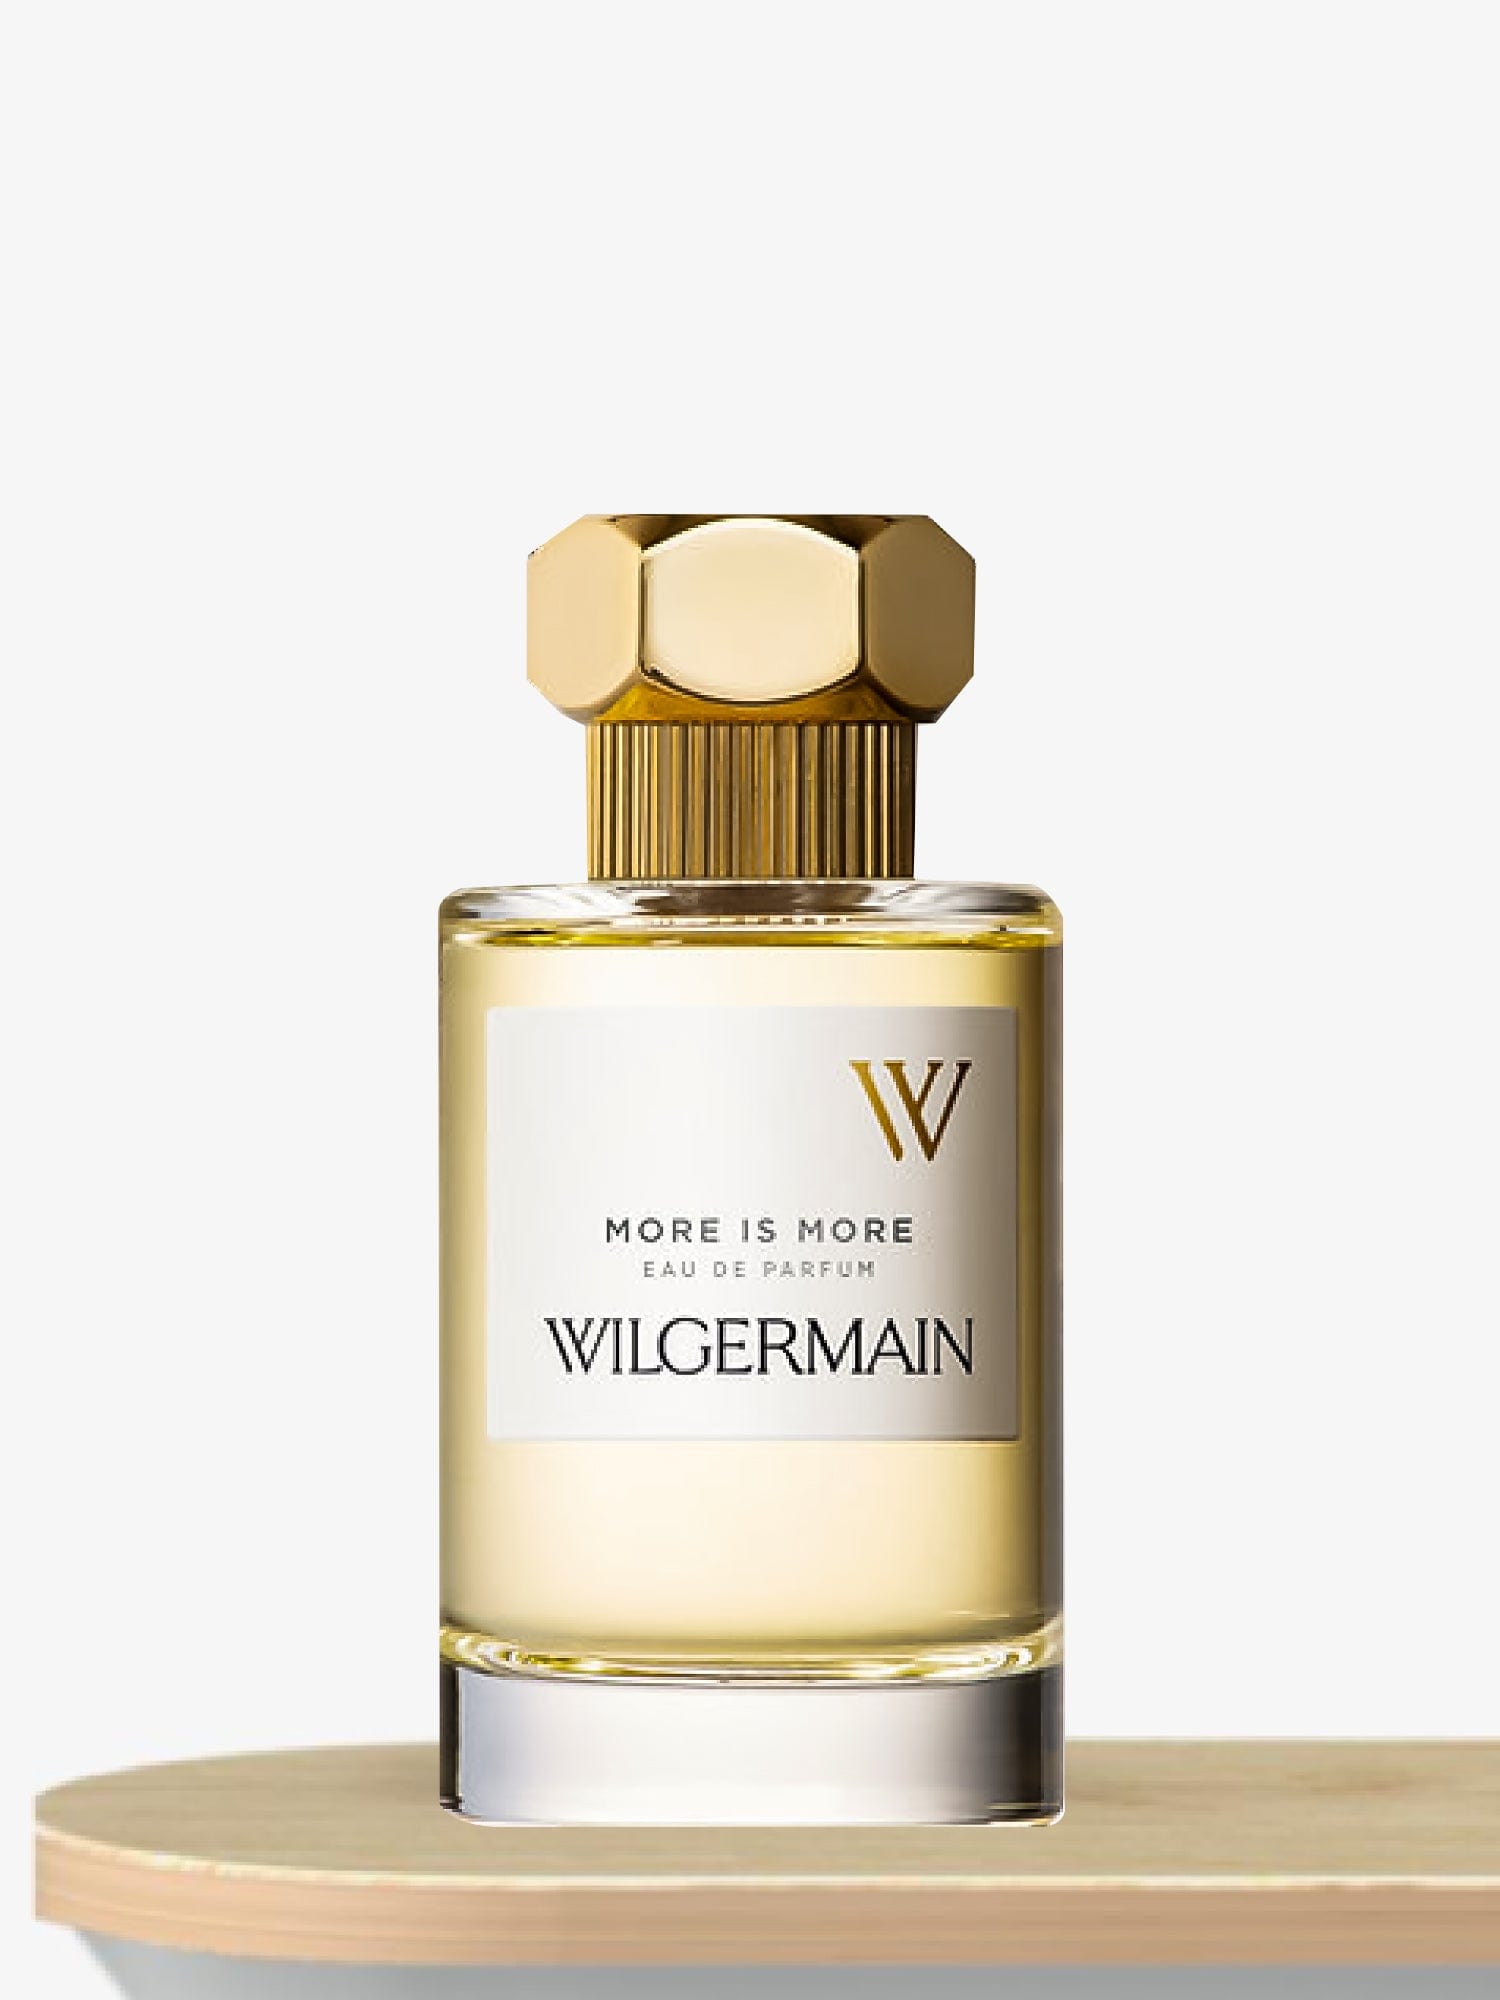 Wilgermain More Is More Eau de Parfum 100 mL / Unisex